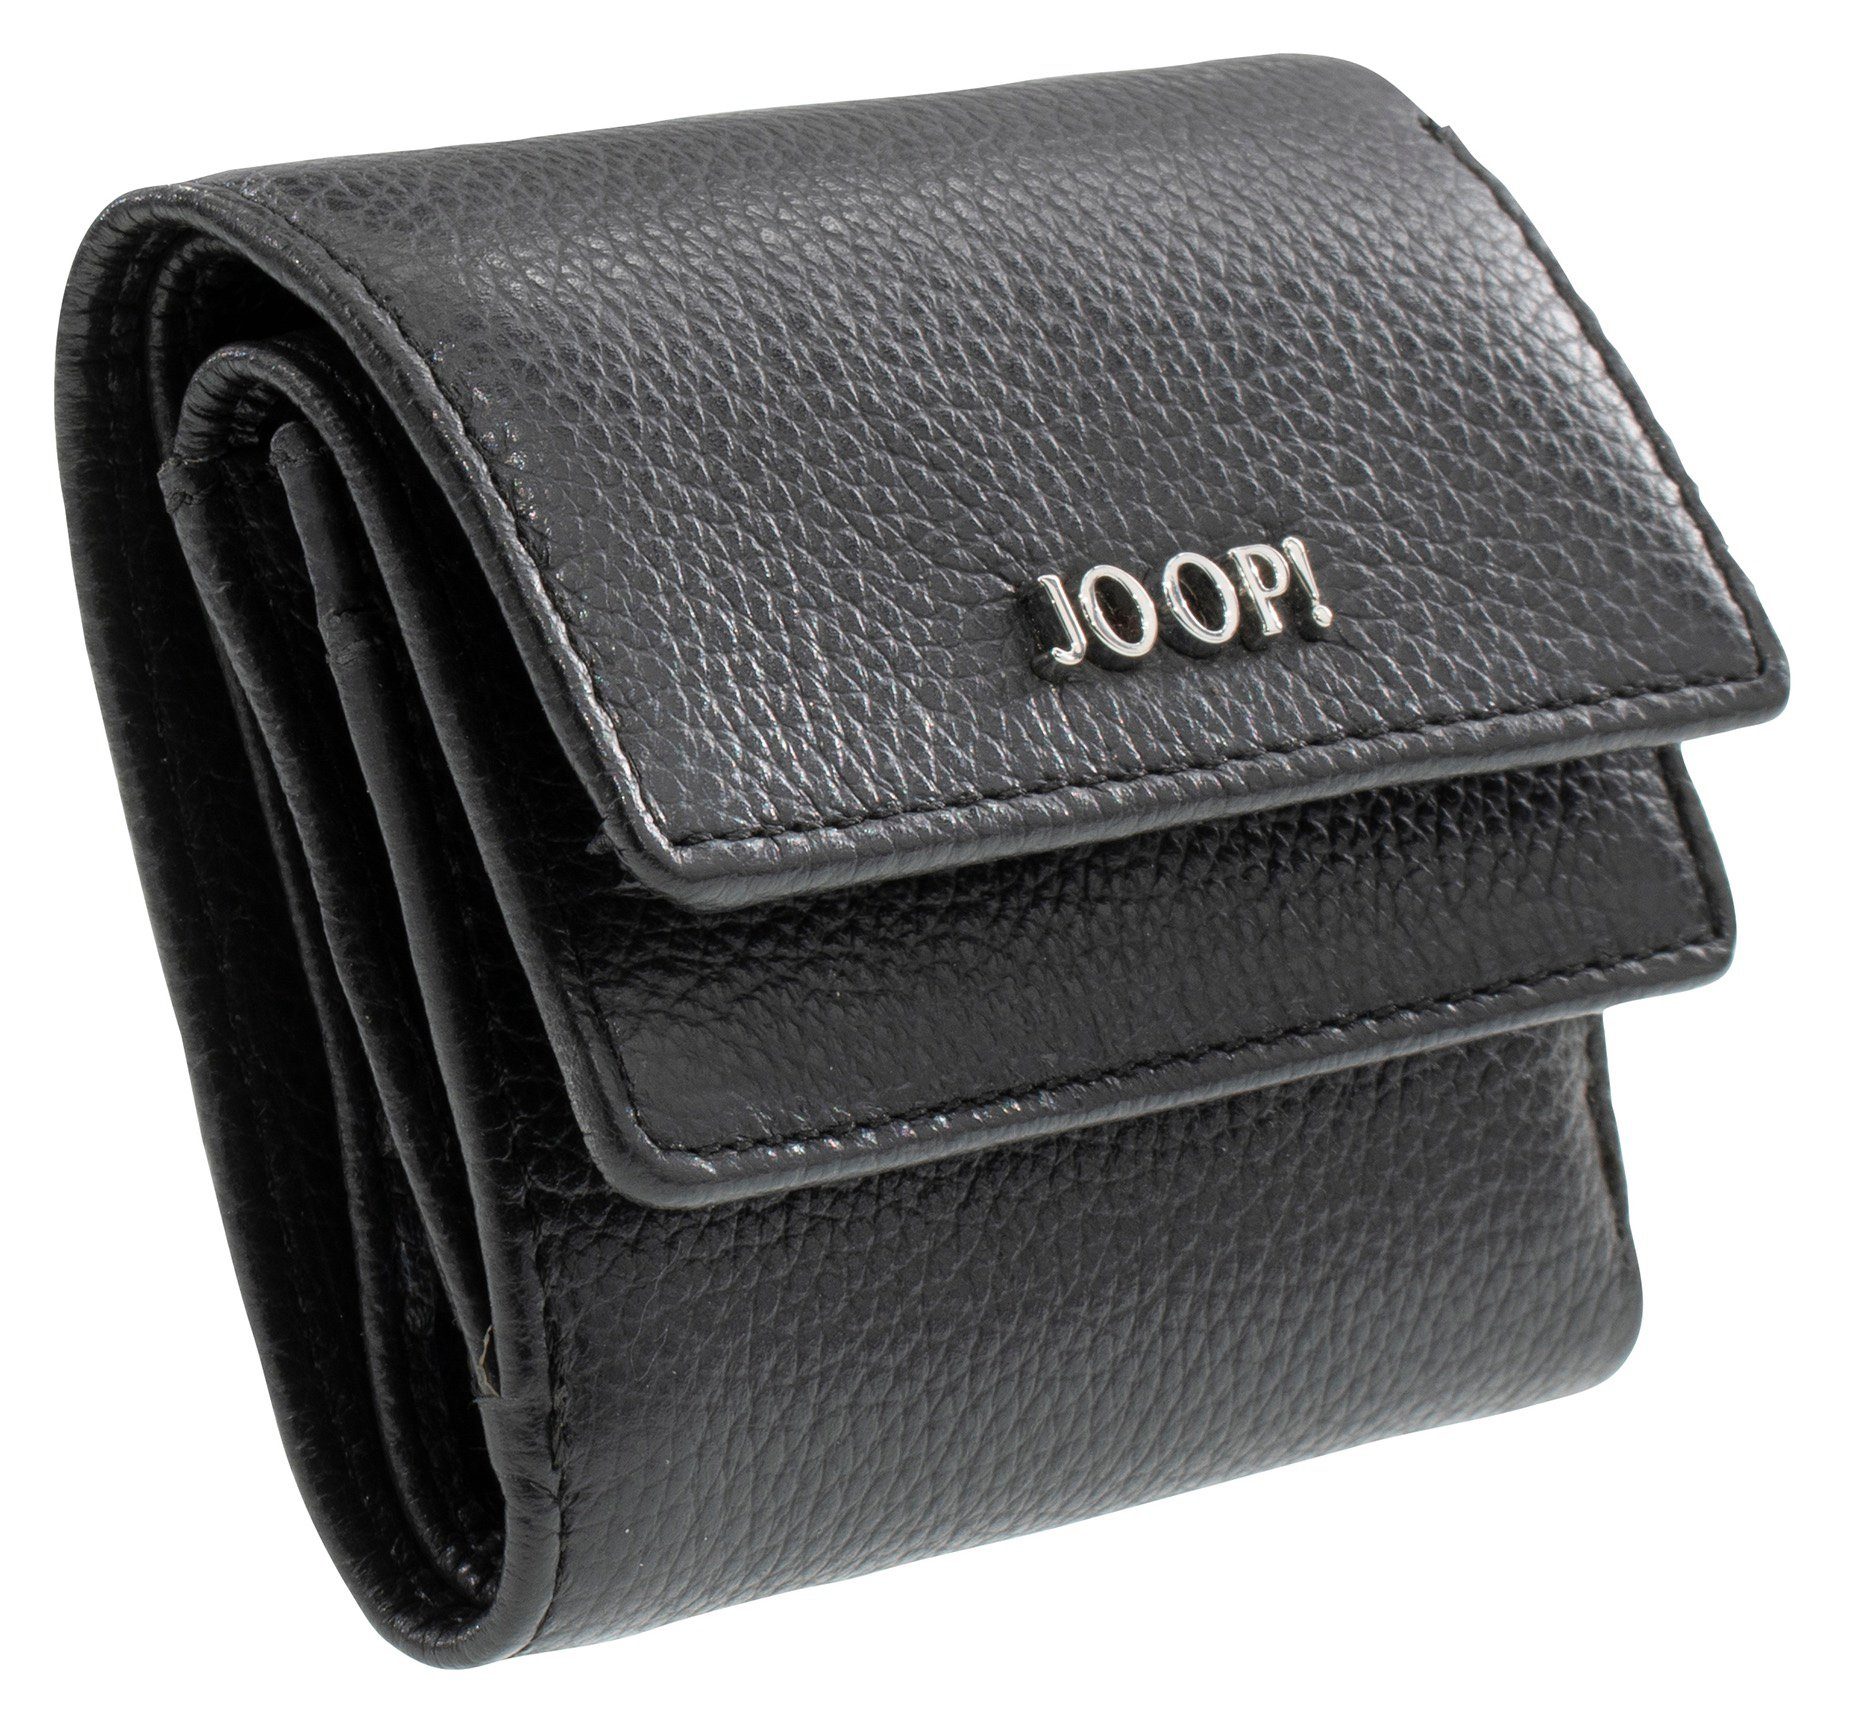 Geldbörse black Format kleinen sh5f, purse im lina Joop! vivace